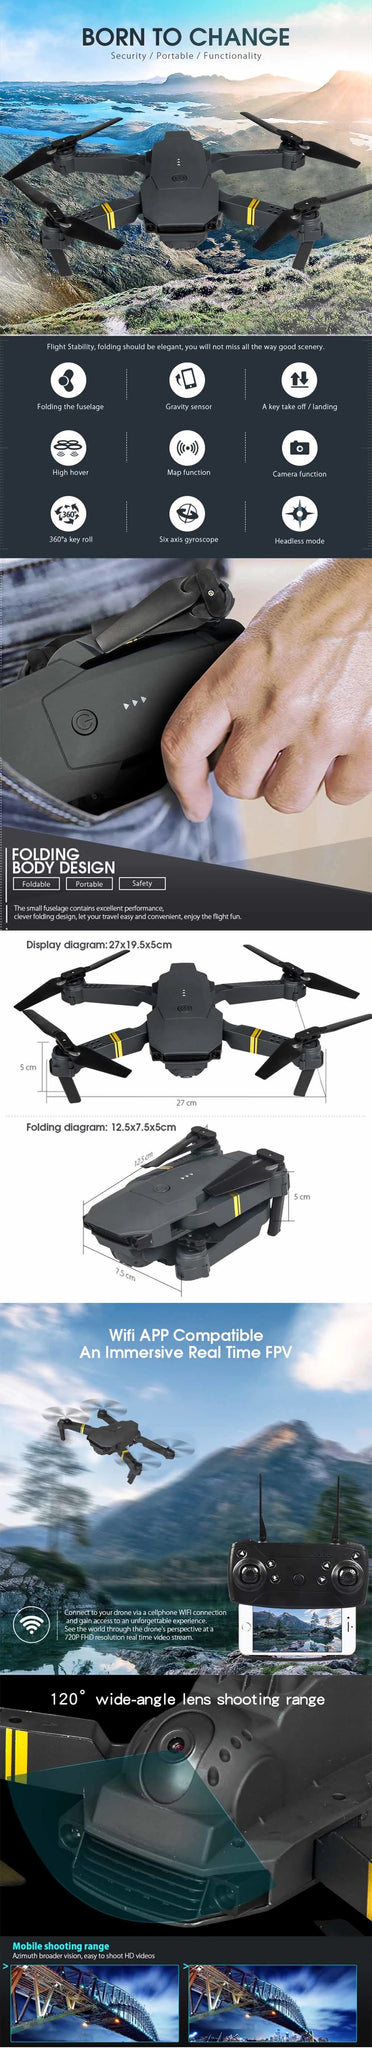 E58 Drone - 4K HD Four axis Foldable Mini Camera, E58 Drone, wifi app compalible an immersive real time fpv con